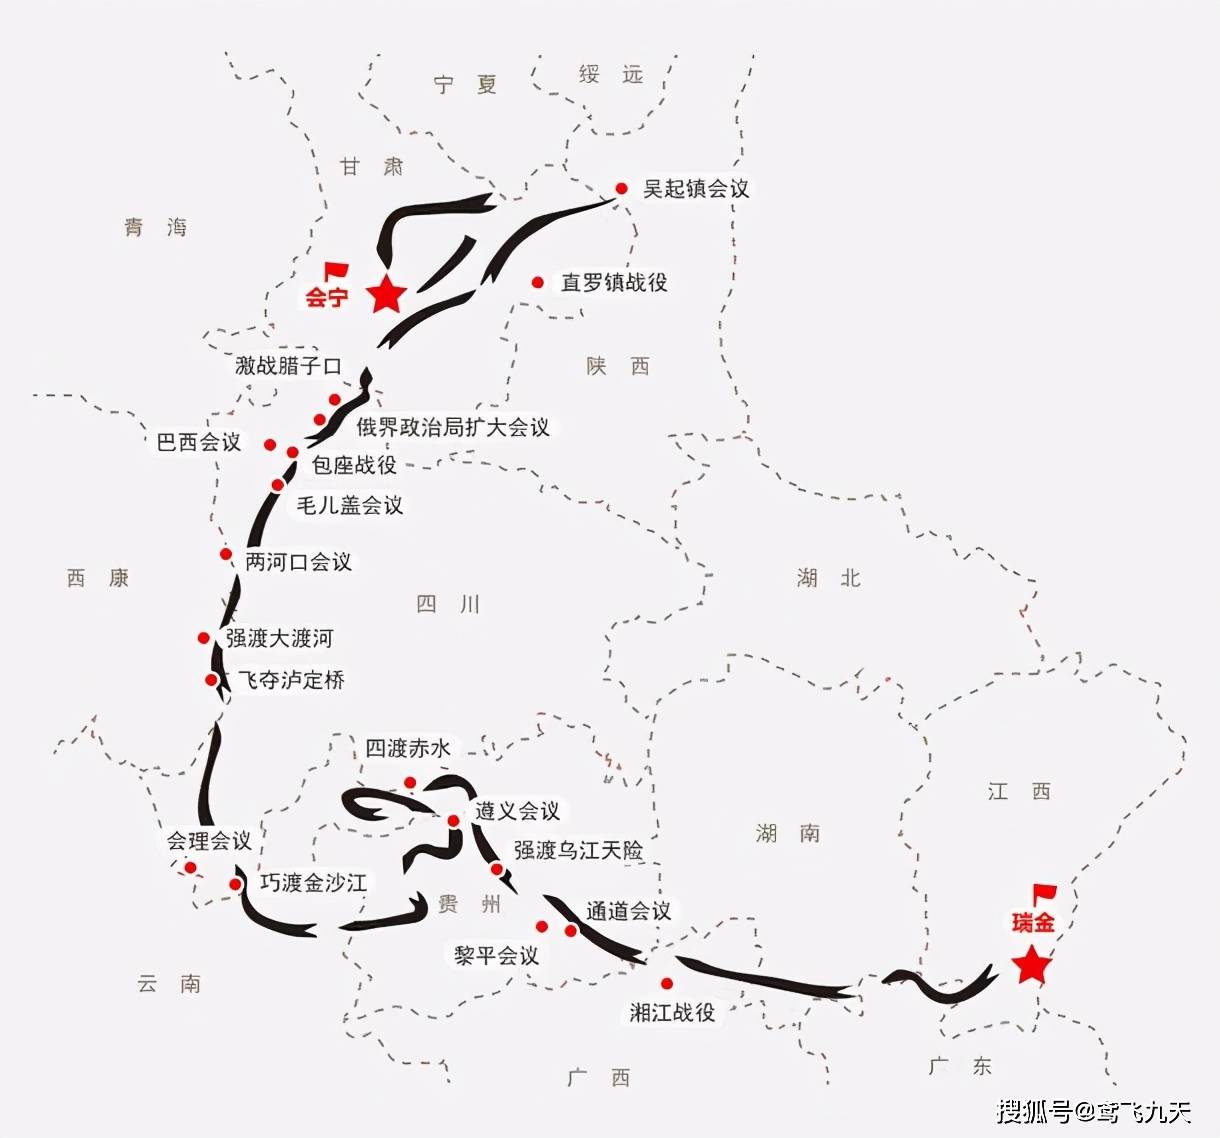 红25军的长征:最早到达陕北,兵力从不到三千,增至四千多